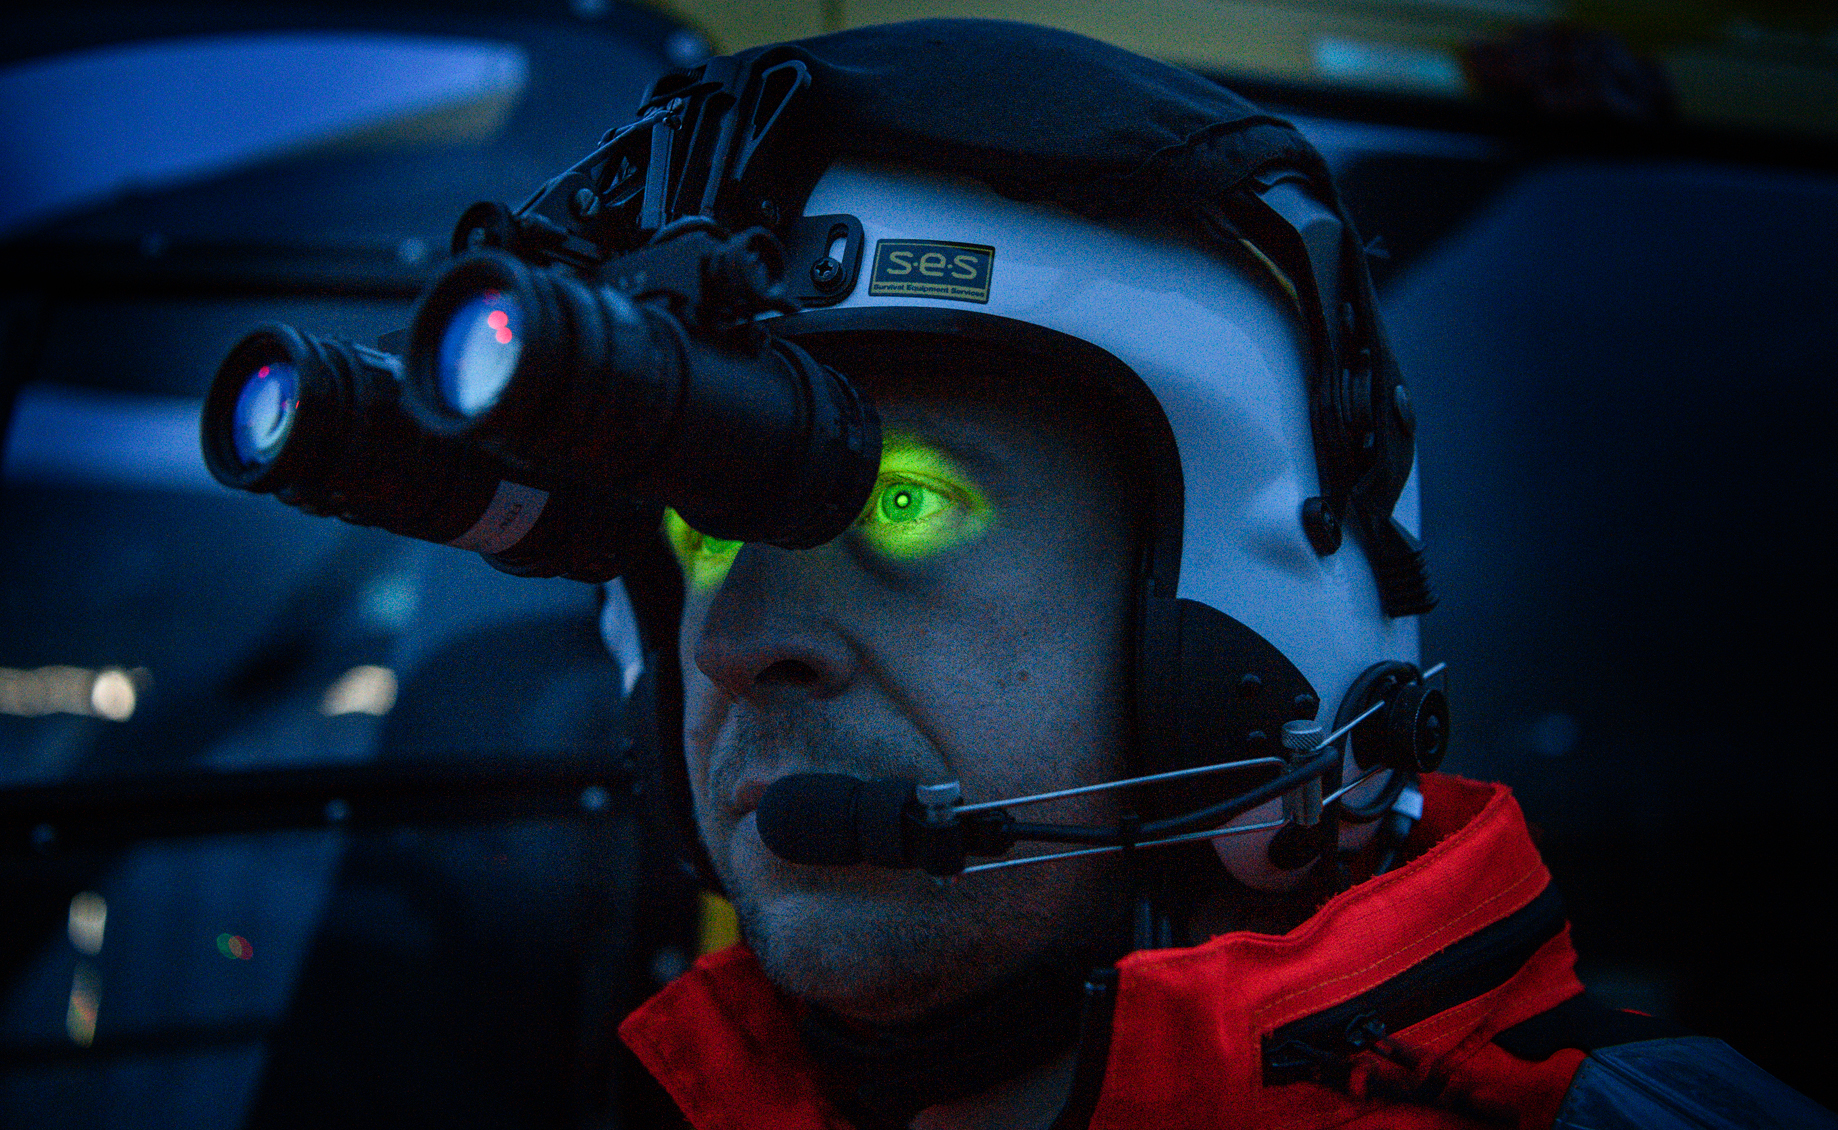 A paramedic wearing night vision goggles